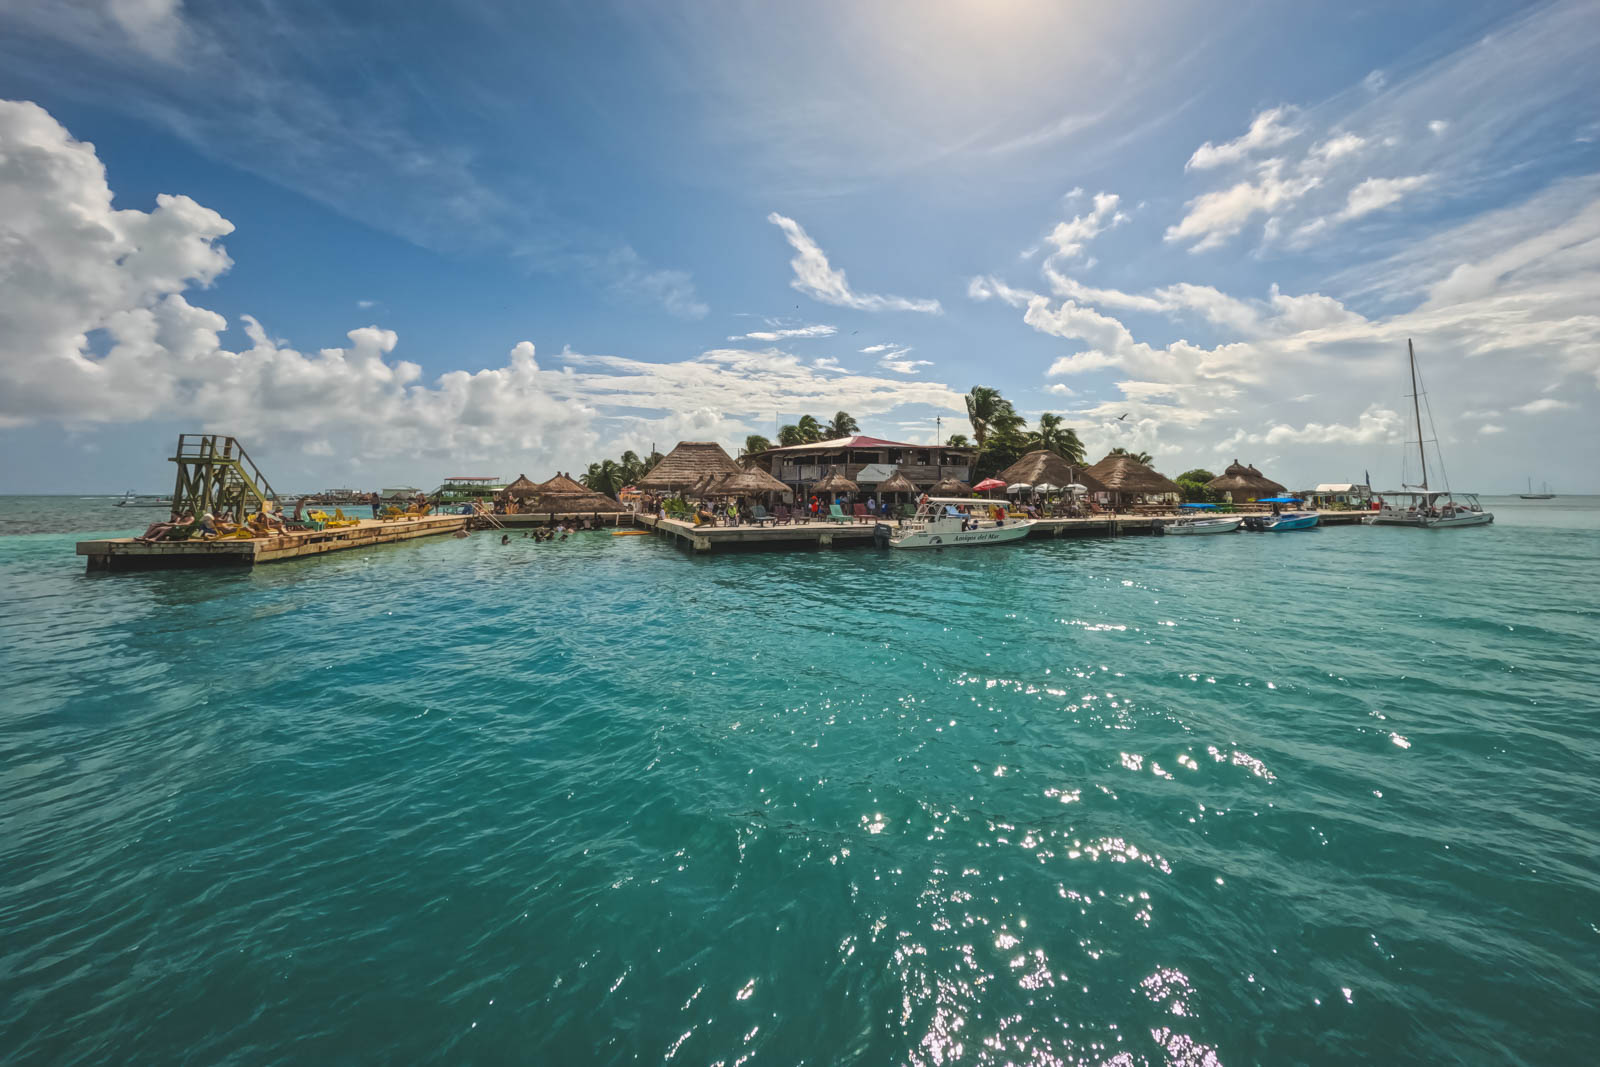 Top 20 Activities to Experience in Caye Caulker, Belize